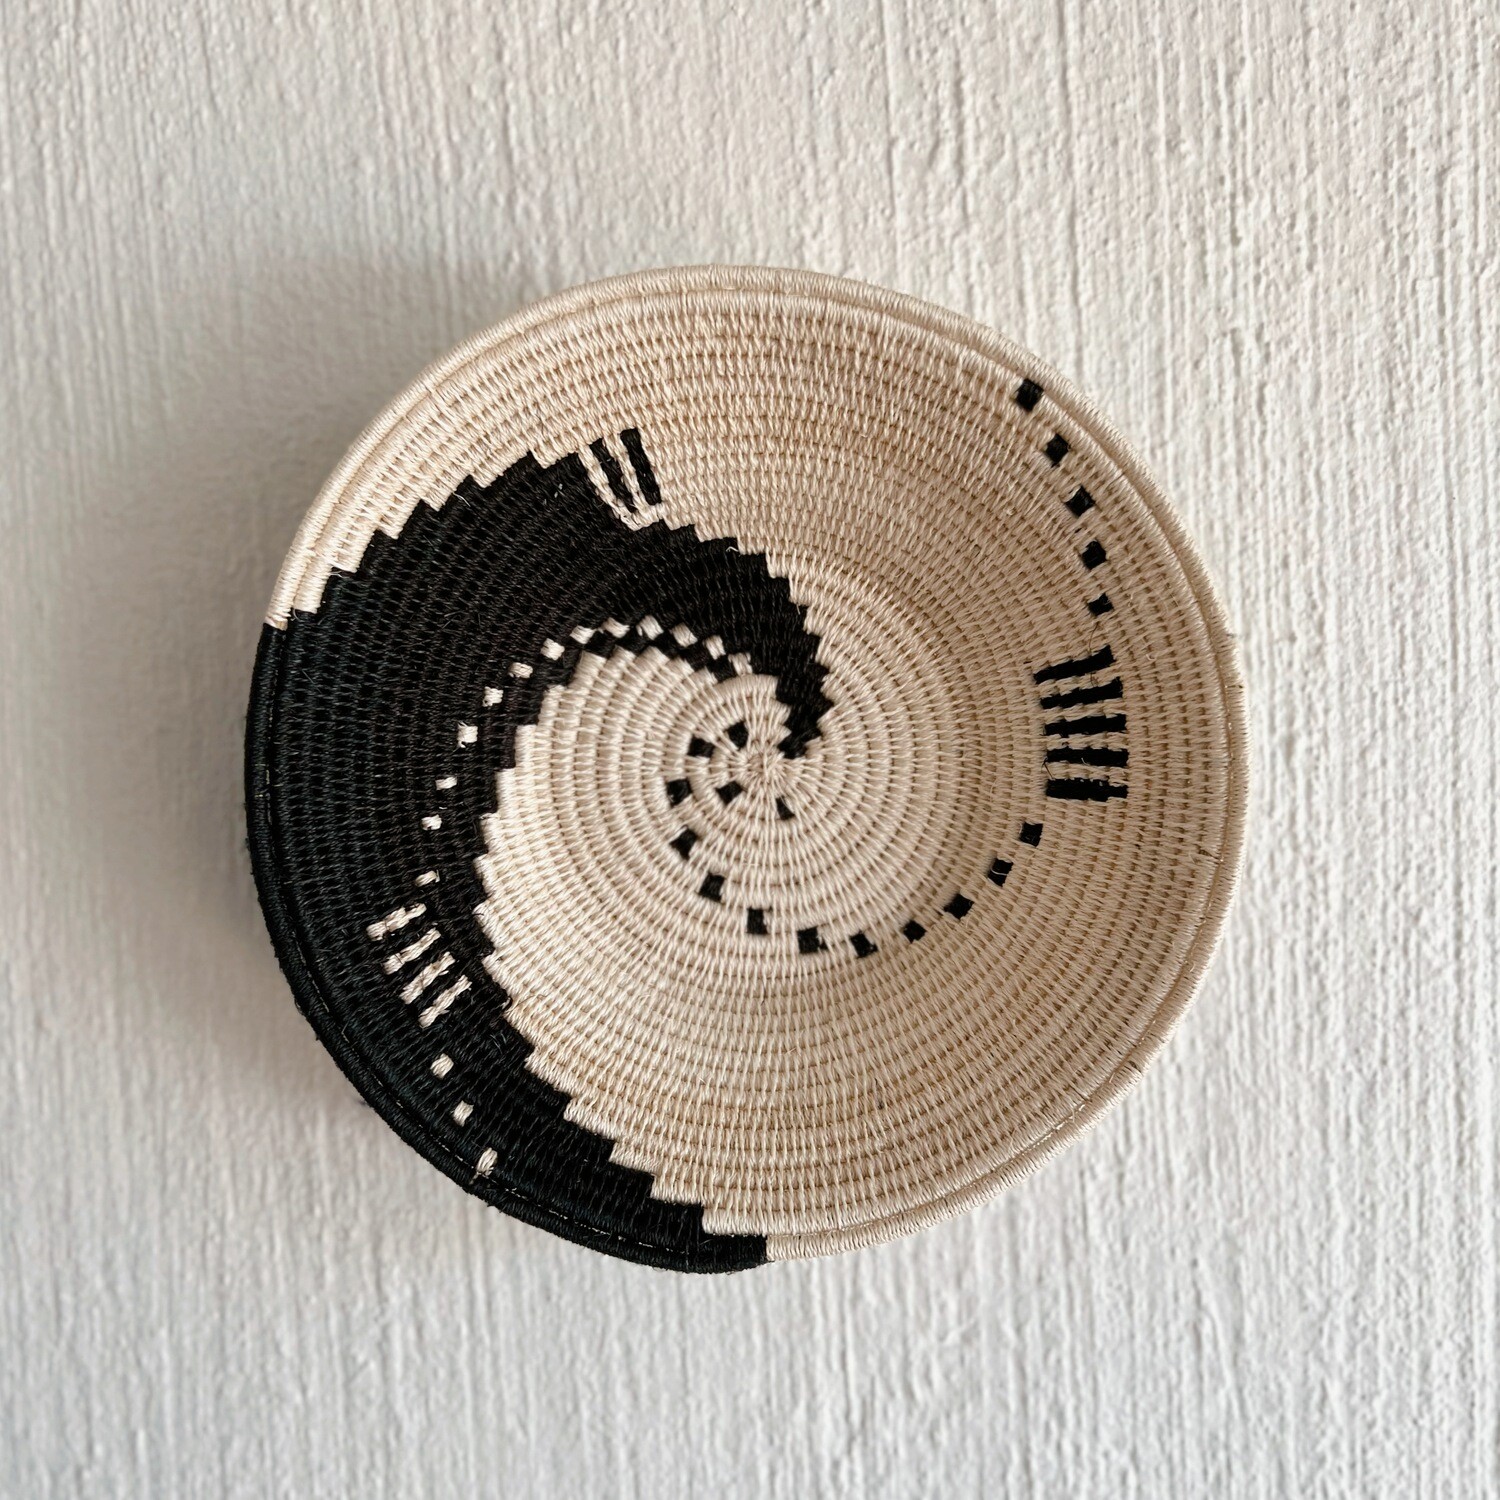 Swaziland Basket - Traditional Single Spiral (B/W)